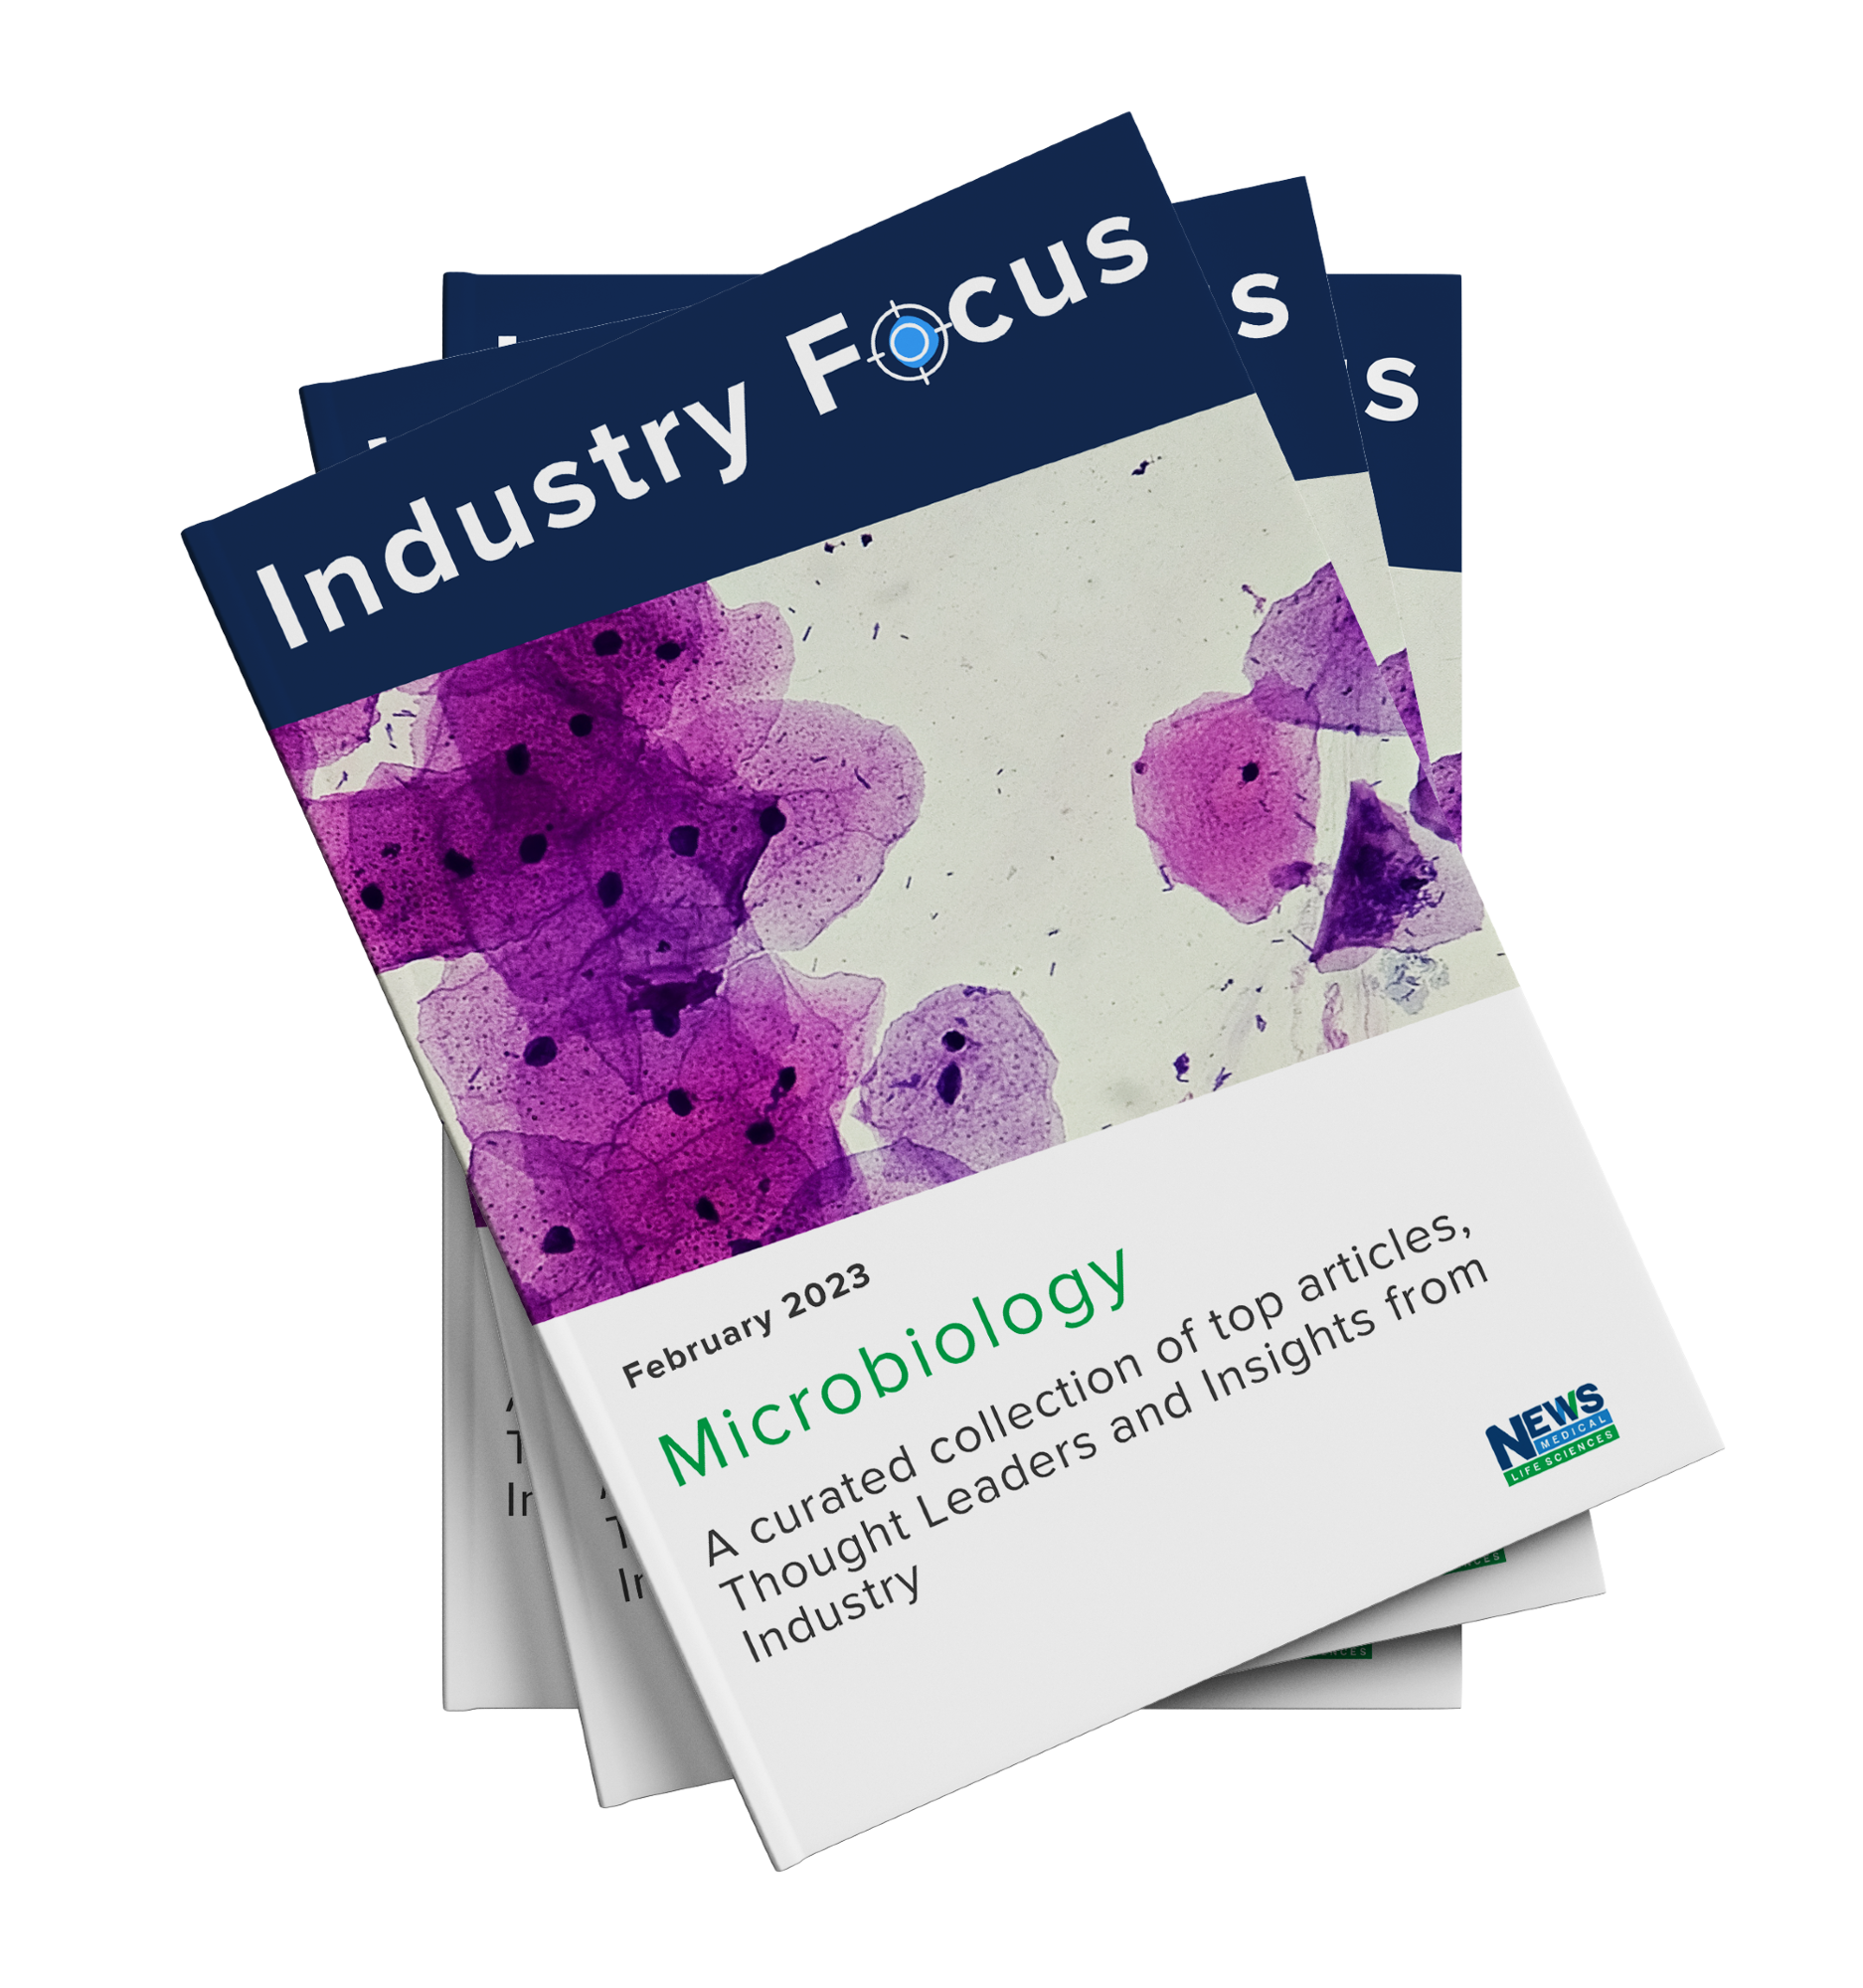 Microbiology Industry Focus eBook